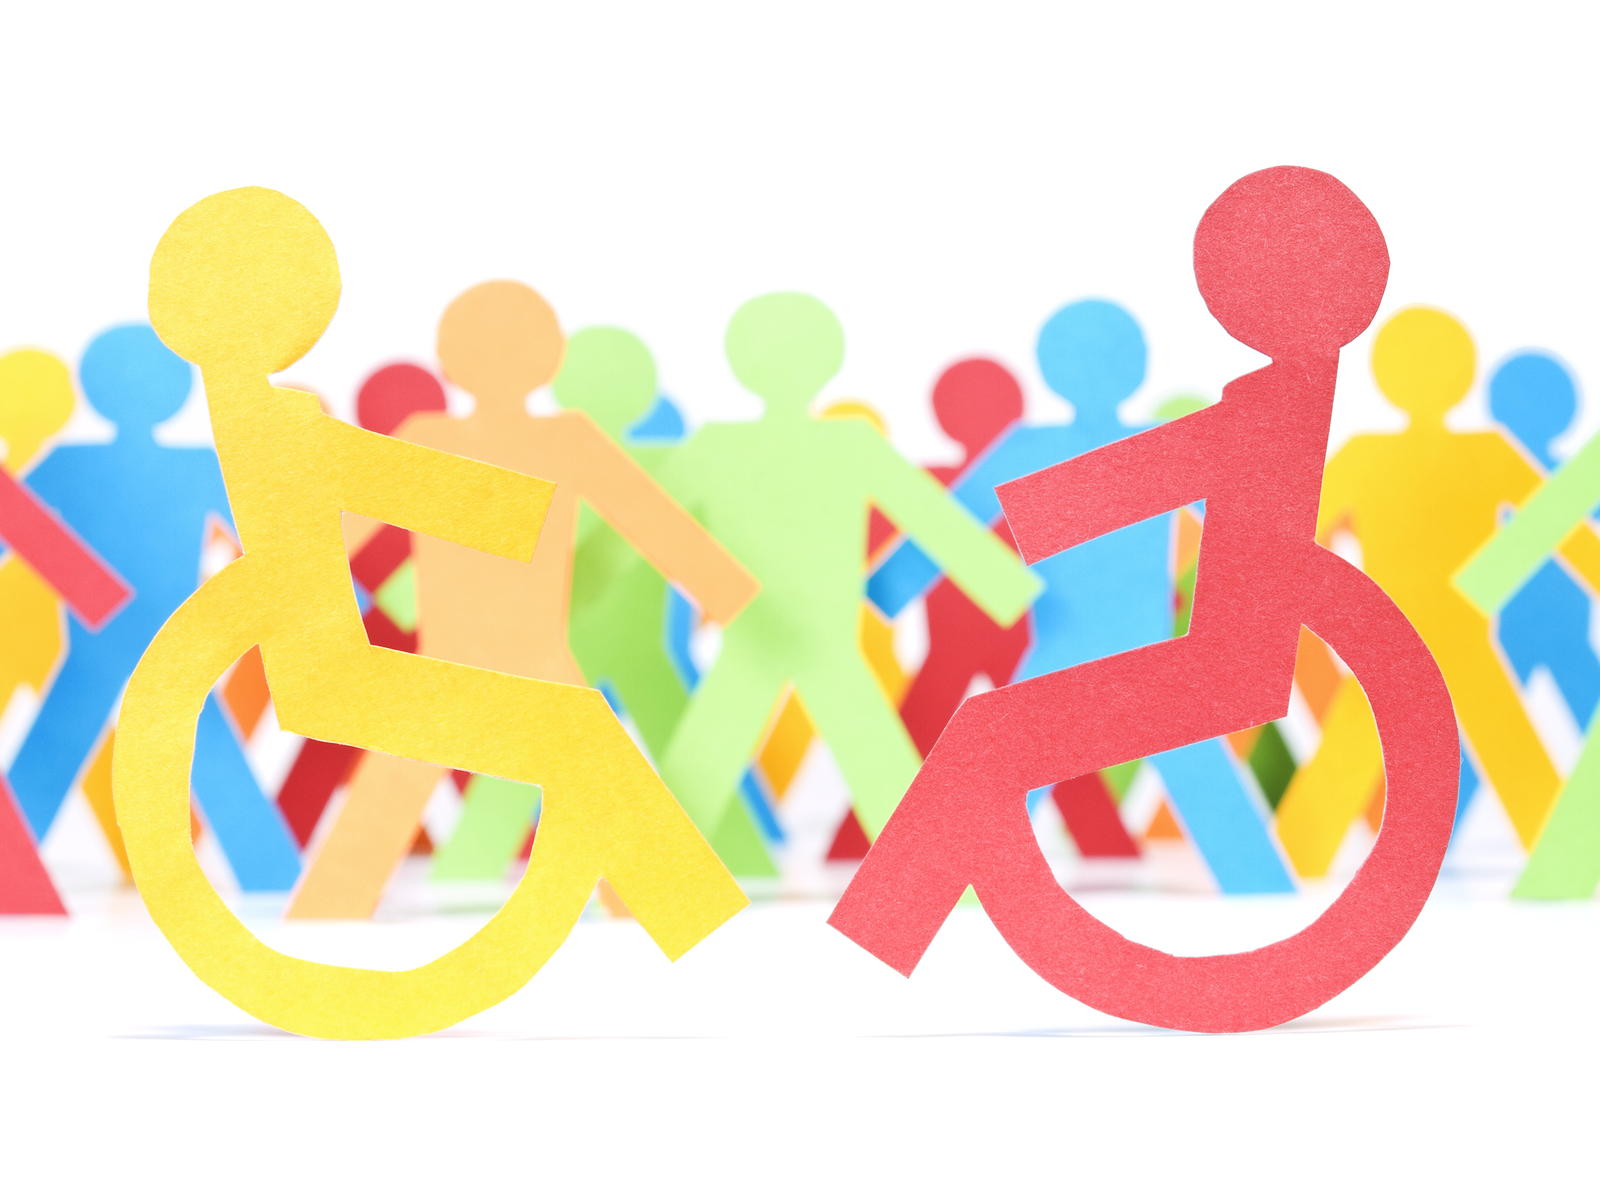 殘疾人士和肢體健全人士和諧共處的圖案